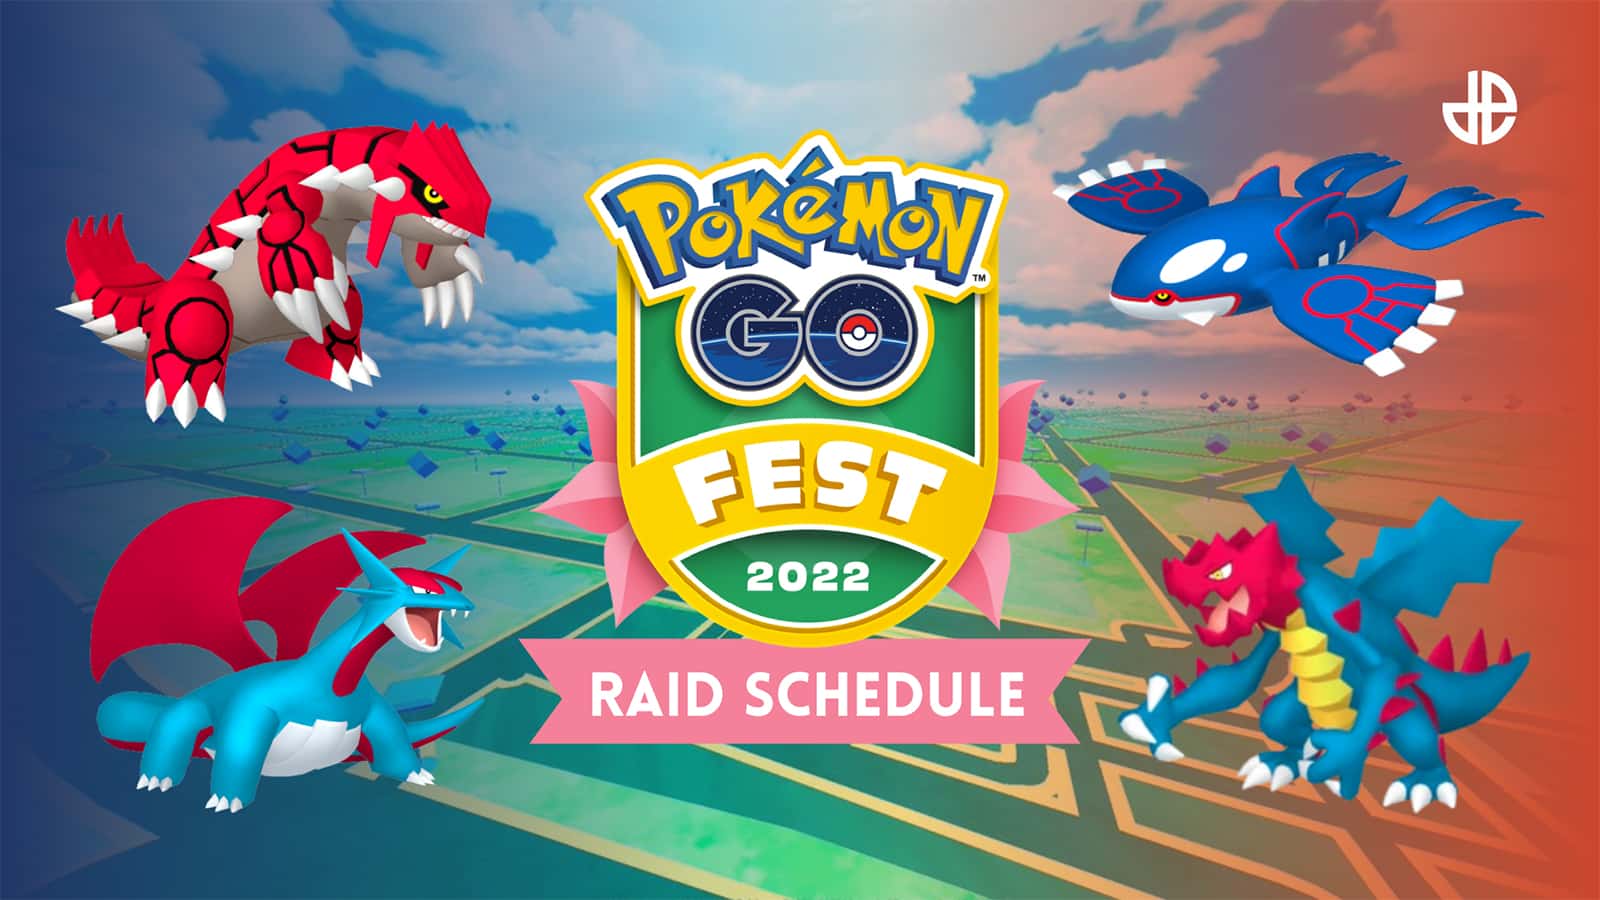 Raid Bosses appearing in Pokemon Go Fest 2022